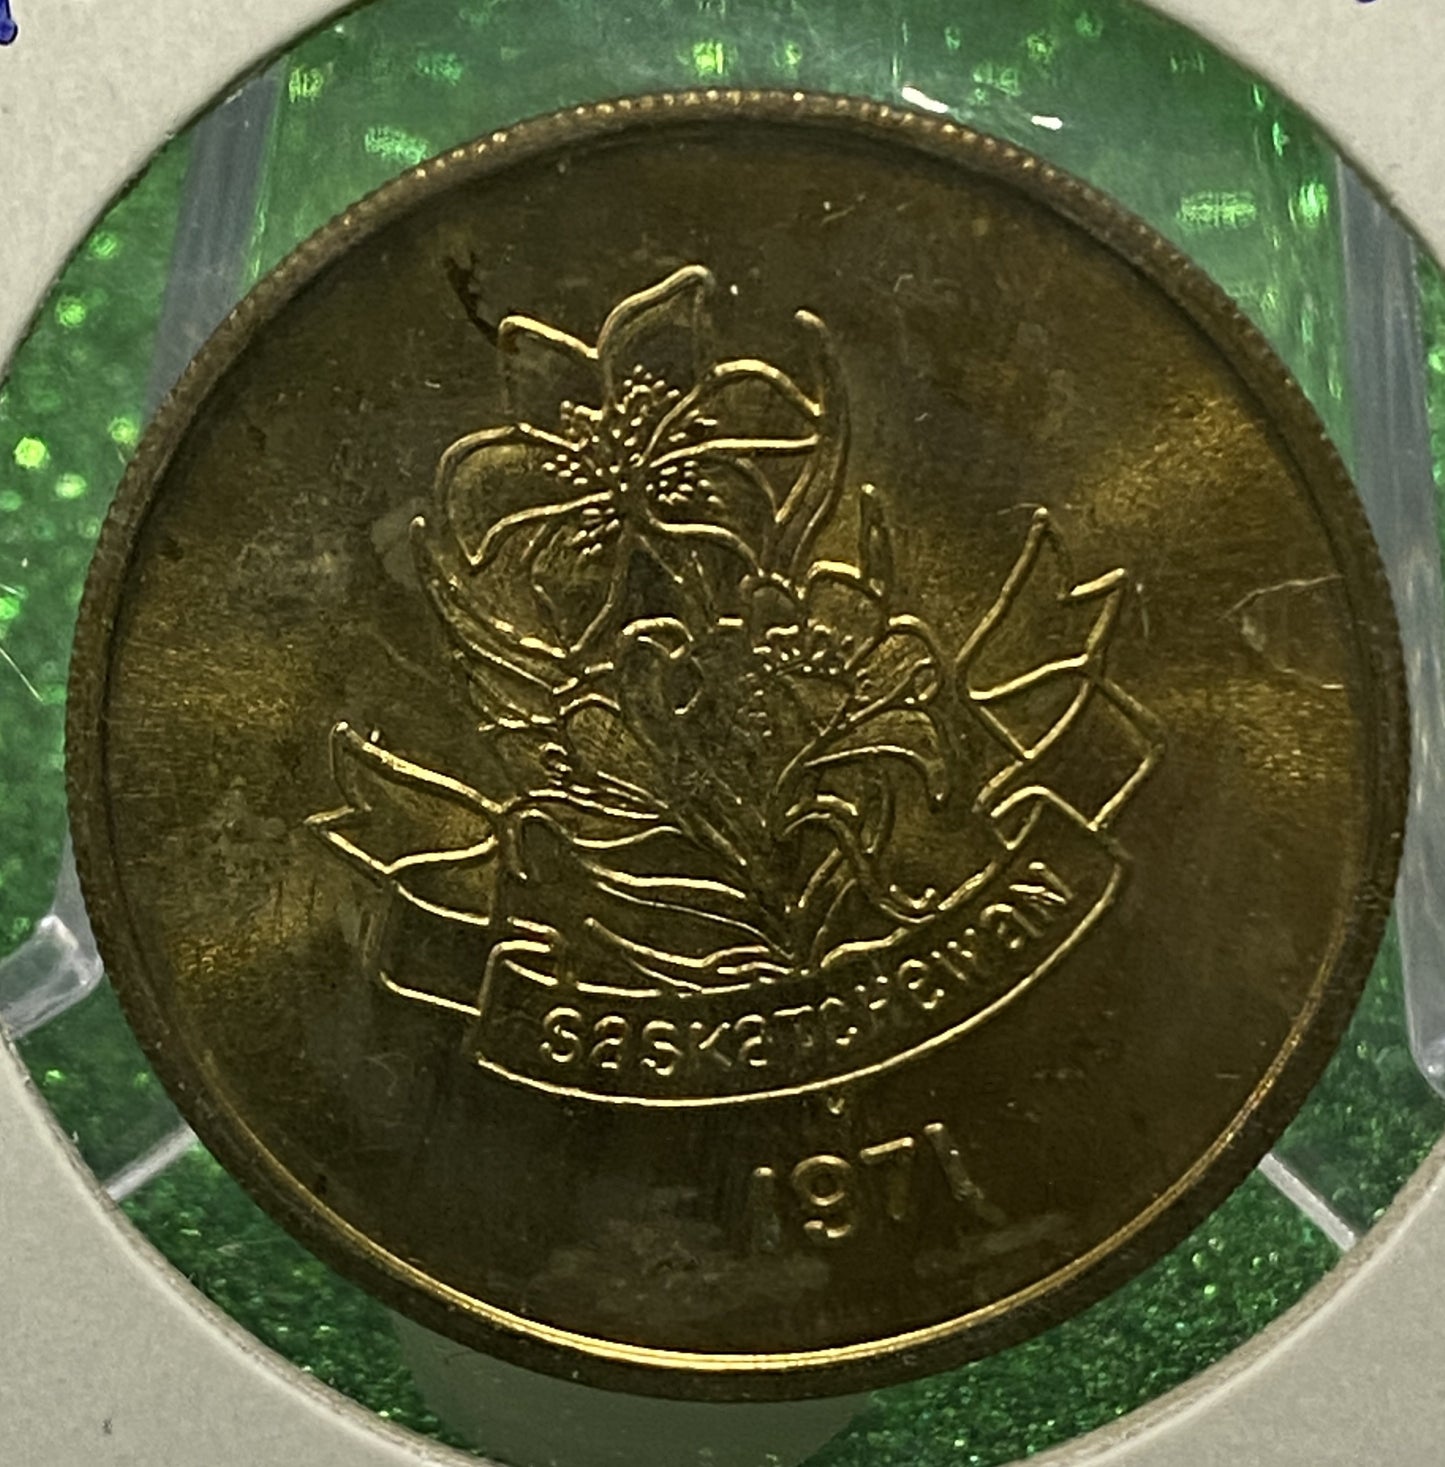 SASKATCHEWAN HOME COMING TOKEN SOUVENIR  CANADIAN COIN VF/UNC 1971